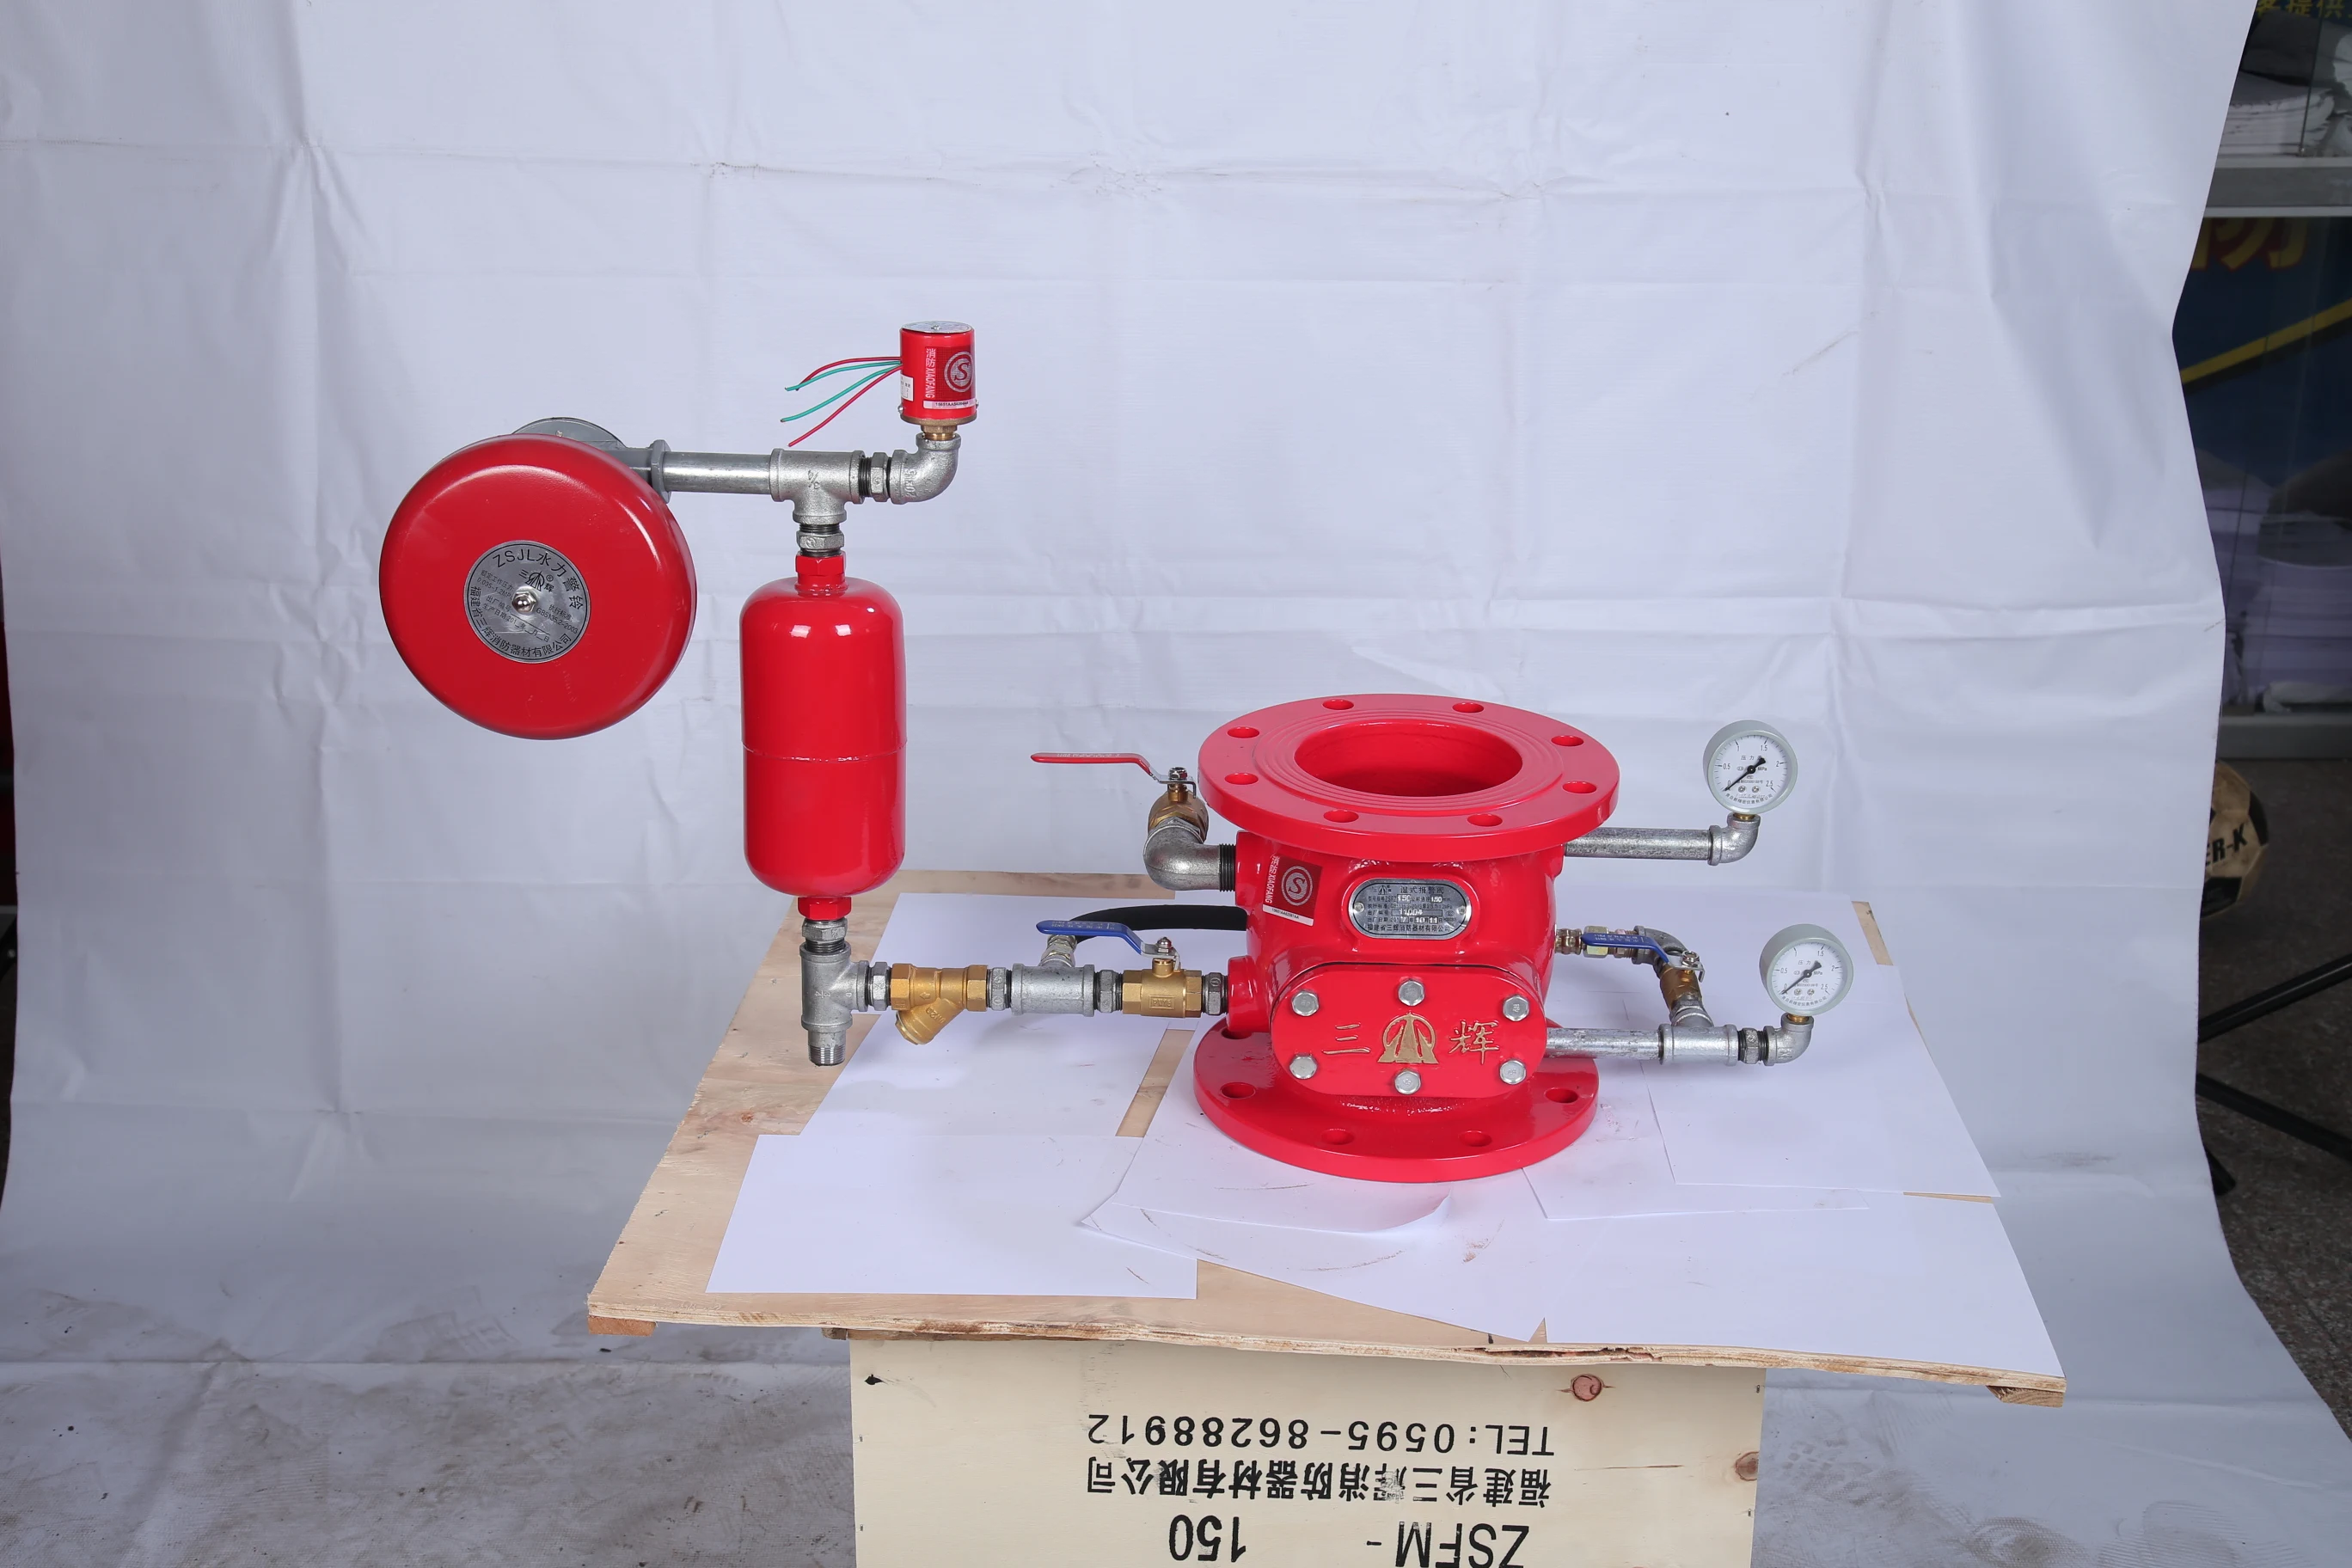 稳压减压阀 消防给水及消火栓系统调试应符合要求核实消防水泵接合器数量和供水能力